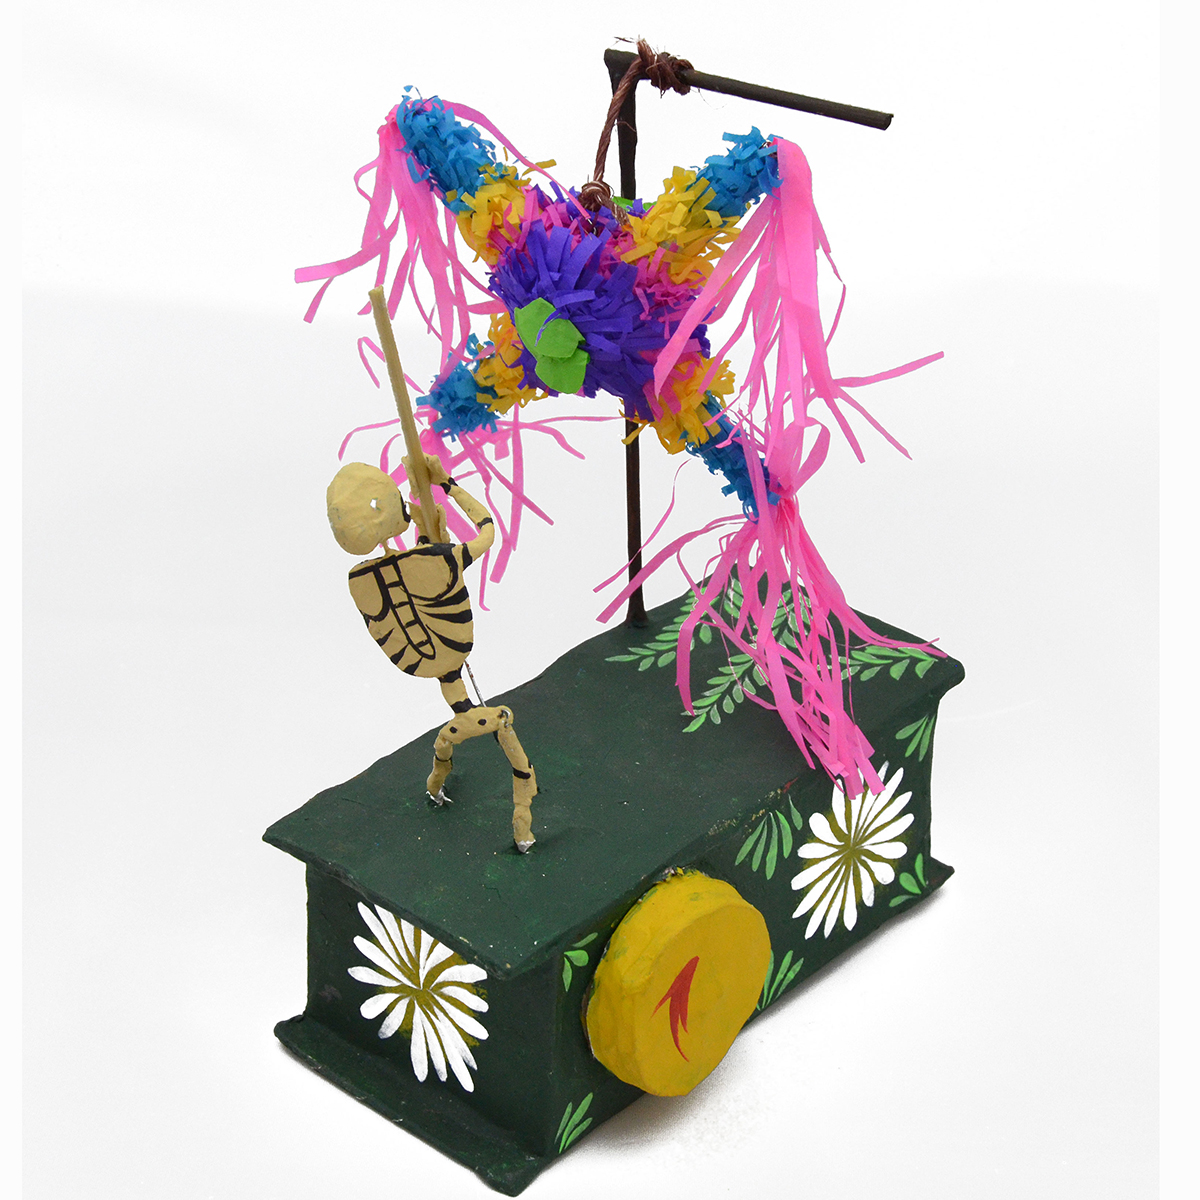 Cartoneria (Mexican Paper Mache) Josue Eleazar Castro: Piñata cartoneria